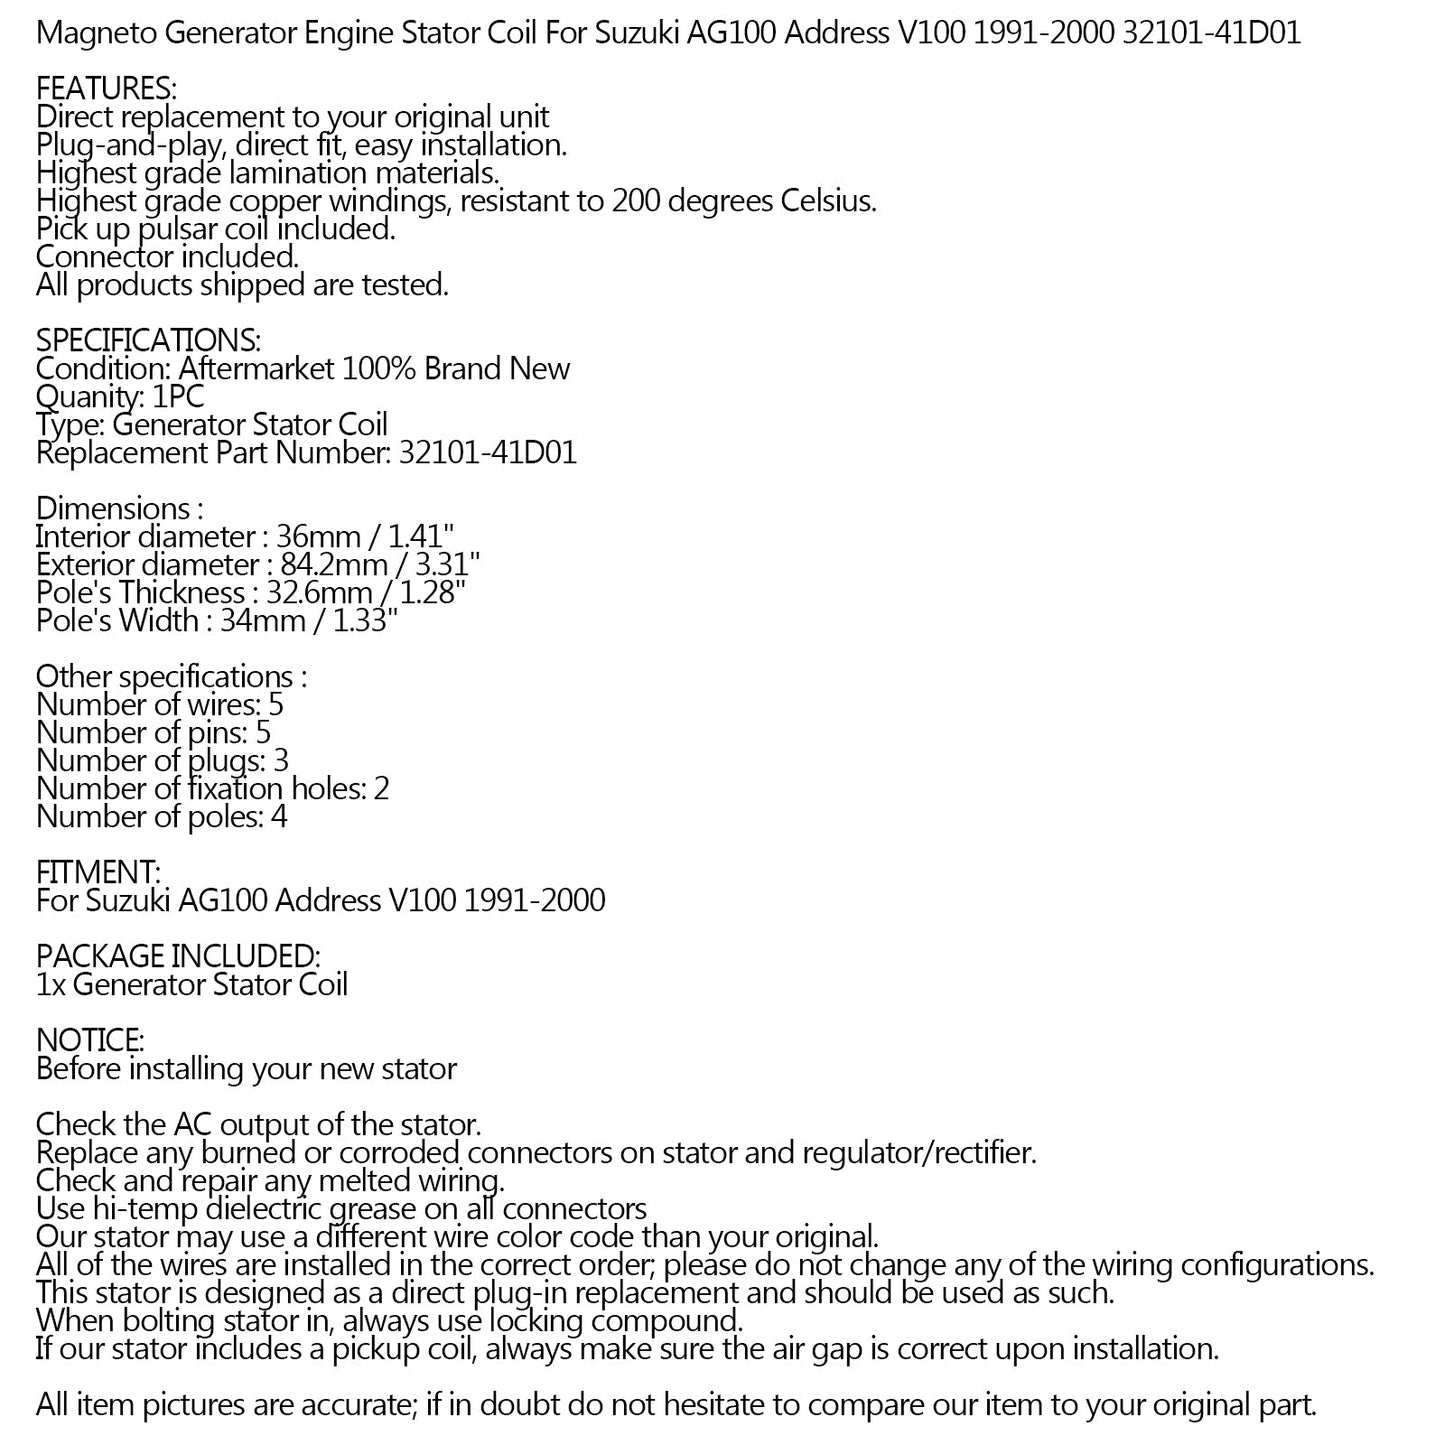 Magneto-Statorspule für Suzuki Ag100 Adresse V100 1991-2000 Ref.32101-41D01 Generic